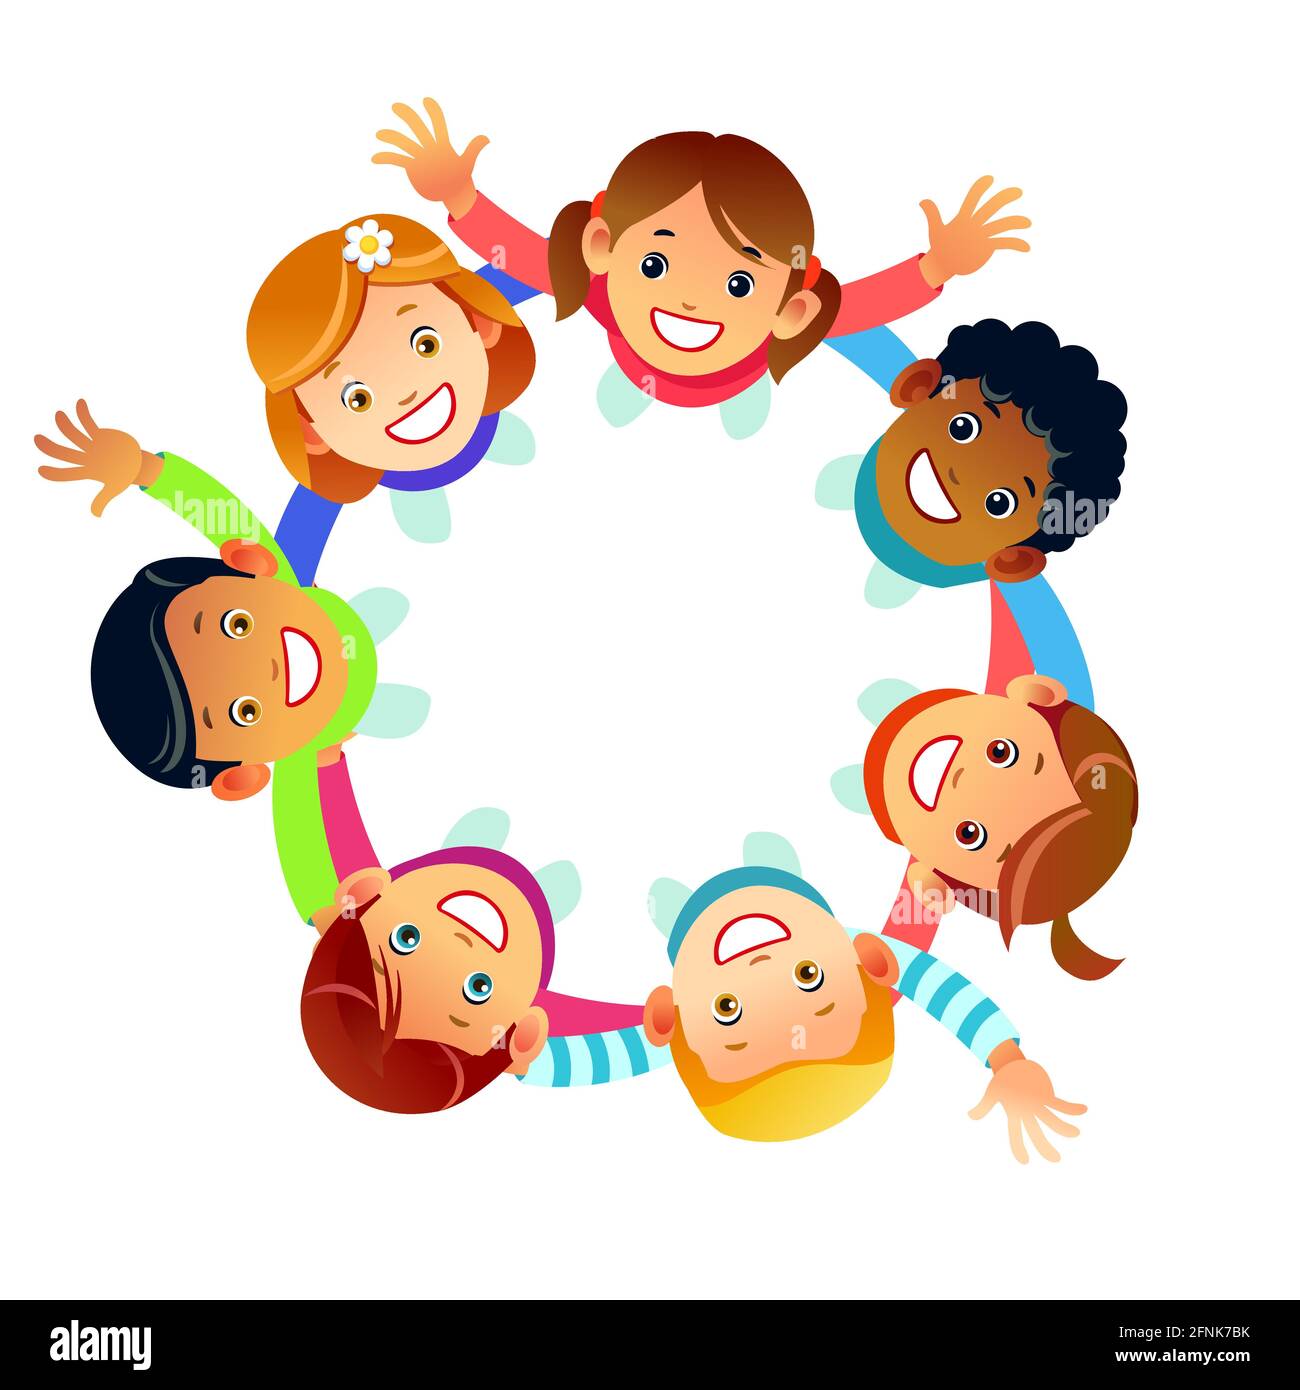 Tarjeta de felicitación del Día de la Amistad Feliz ilustración del círculo  de grupo de niños diversos sujetando las manos desde el ángulo de visión  superior. Concepto de amor de amigo para